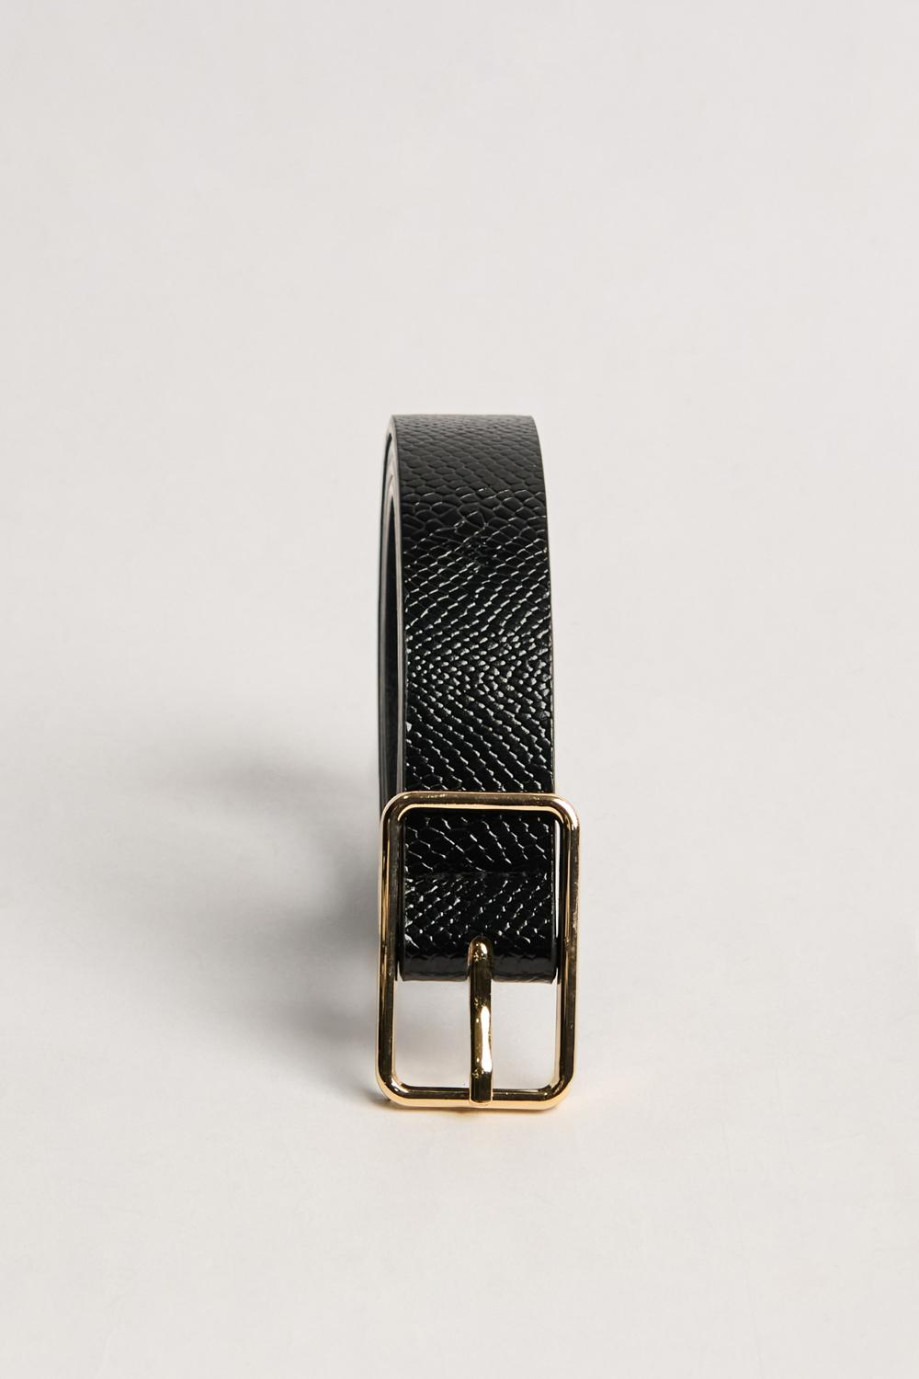 Cinturón femenino en color café oscuro, elaborado en sintético con textura tipo reptil, hebilla metálica ovalada y punta con for